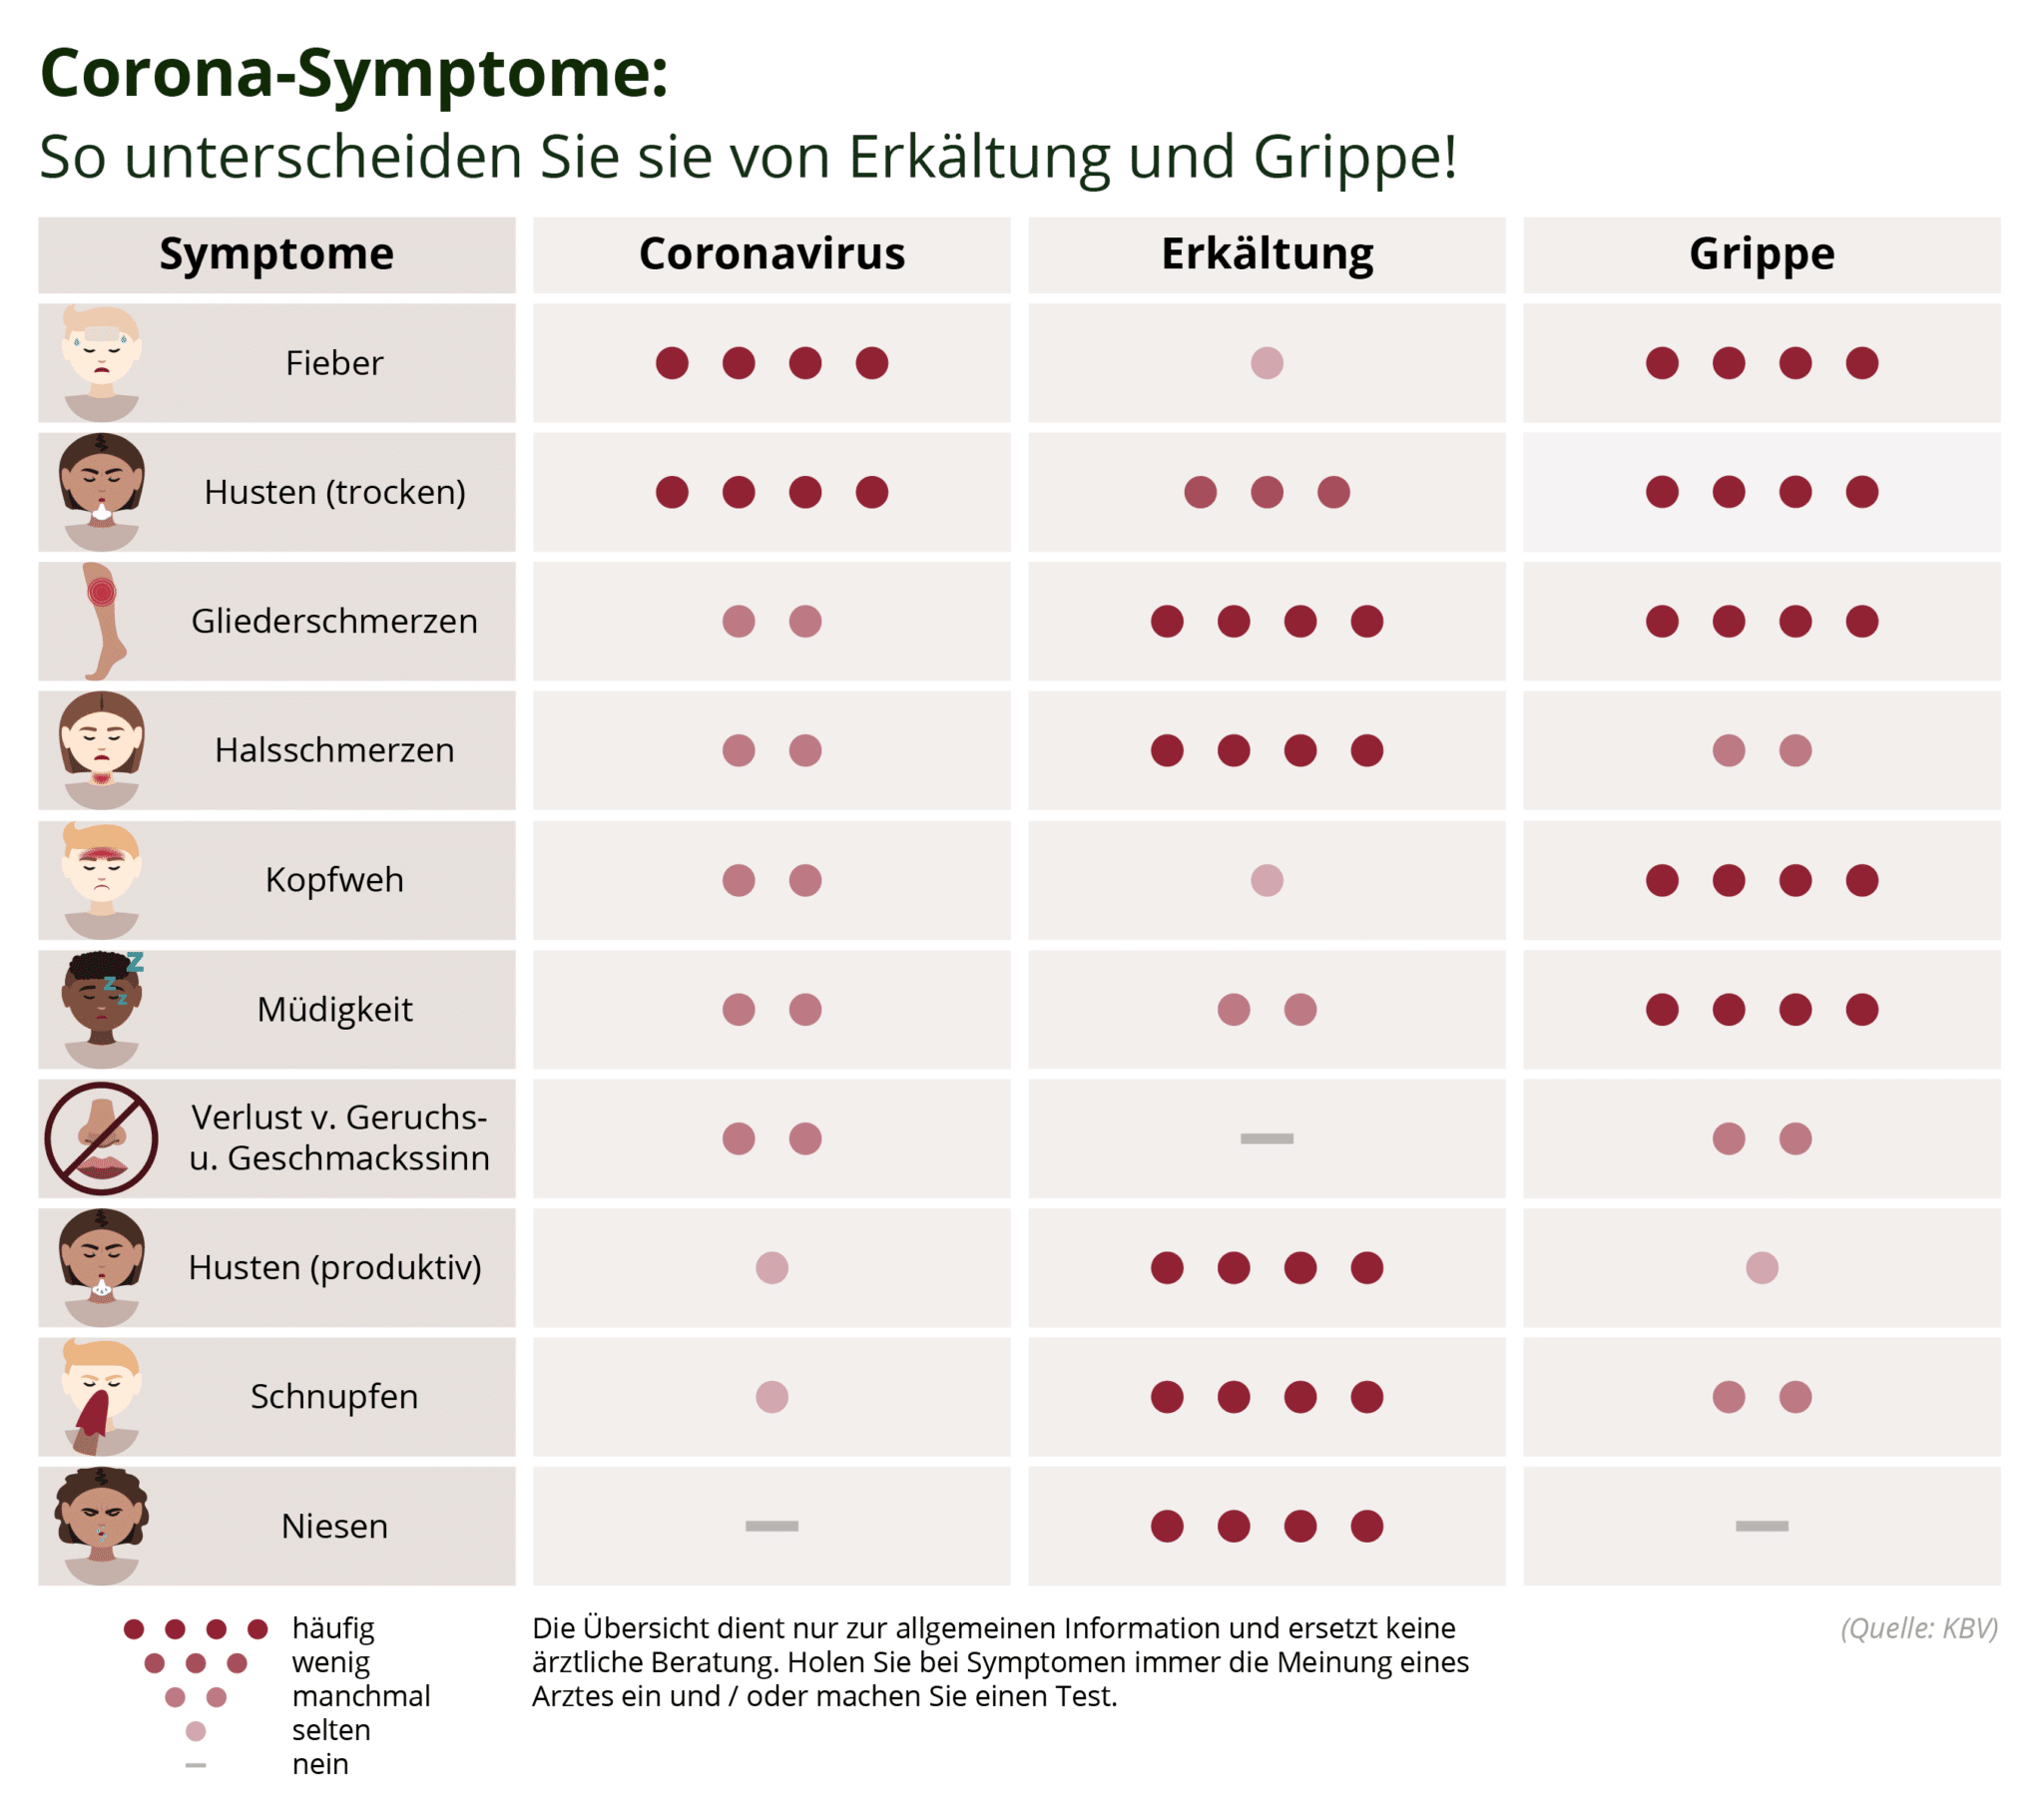 Das Online-Portal Vergleich.org hat eine praktische Infografik erstellt, die auf einen Blick zeigt, welche Symptome für welche Erkrankung typisch sind.